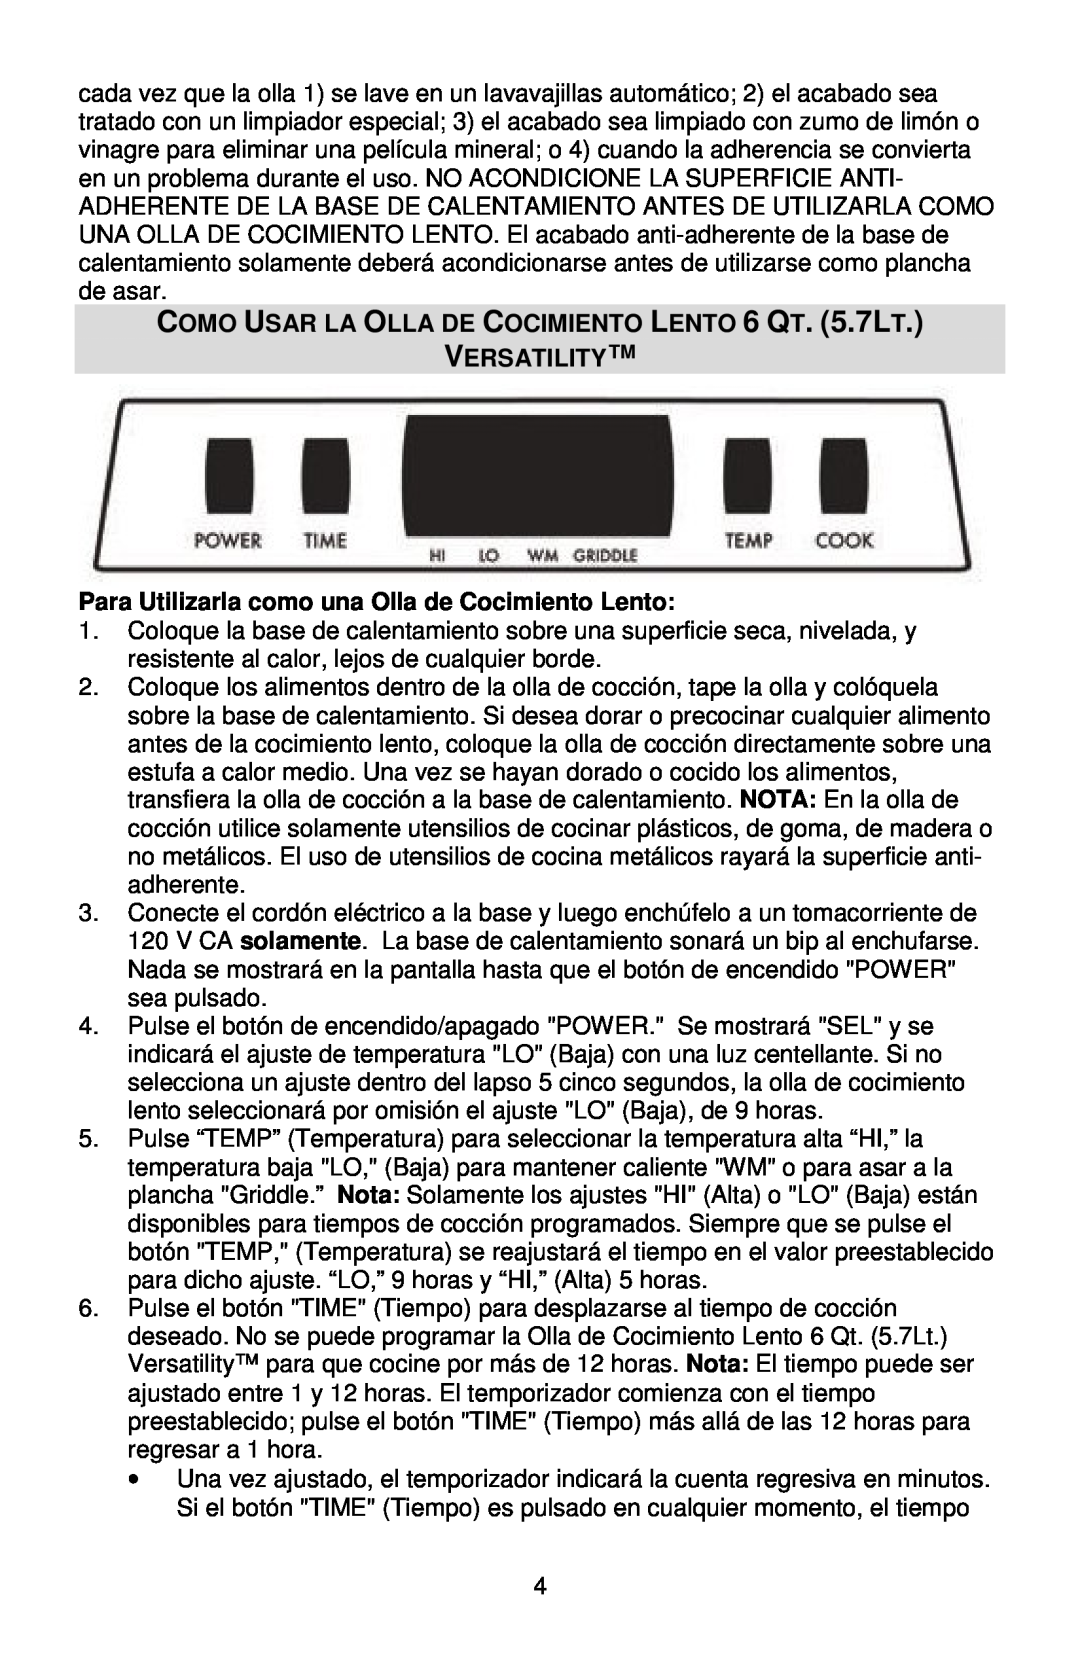 West Bend L5800, 84966 instruction manual COMO USAR LA OLLA DE COCIMIENTO LENTO 6 QT. 5.7LT, Versatility 